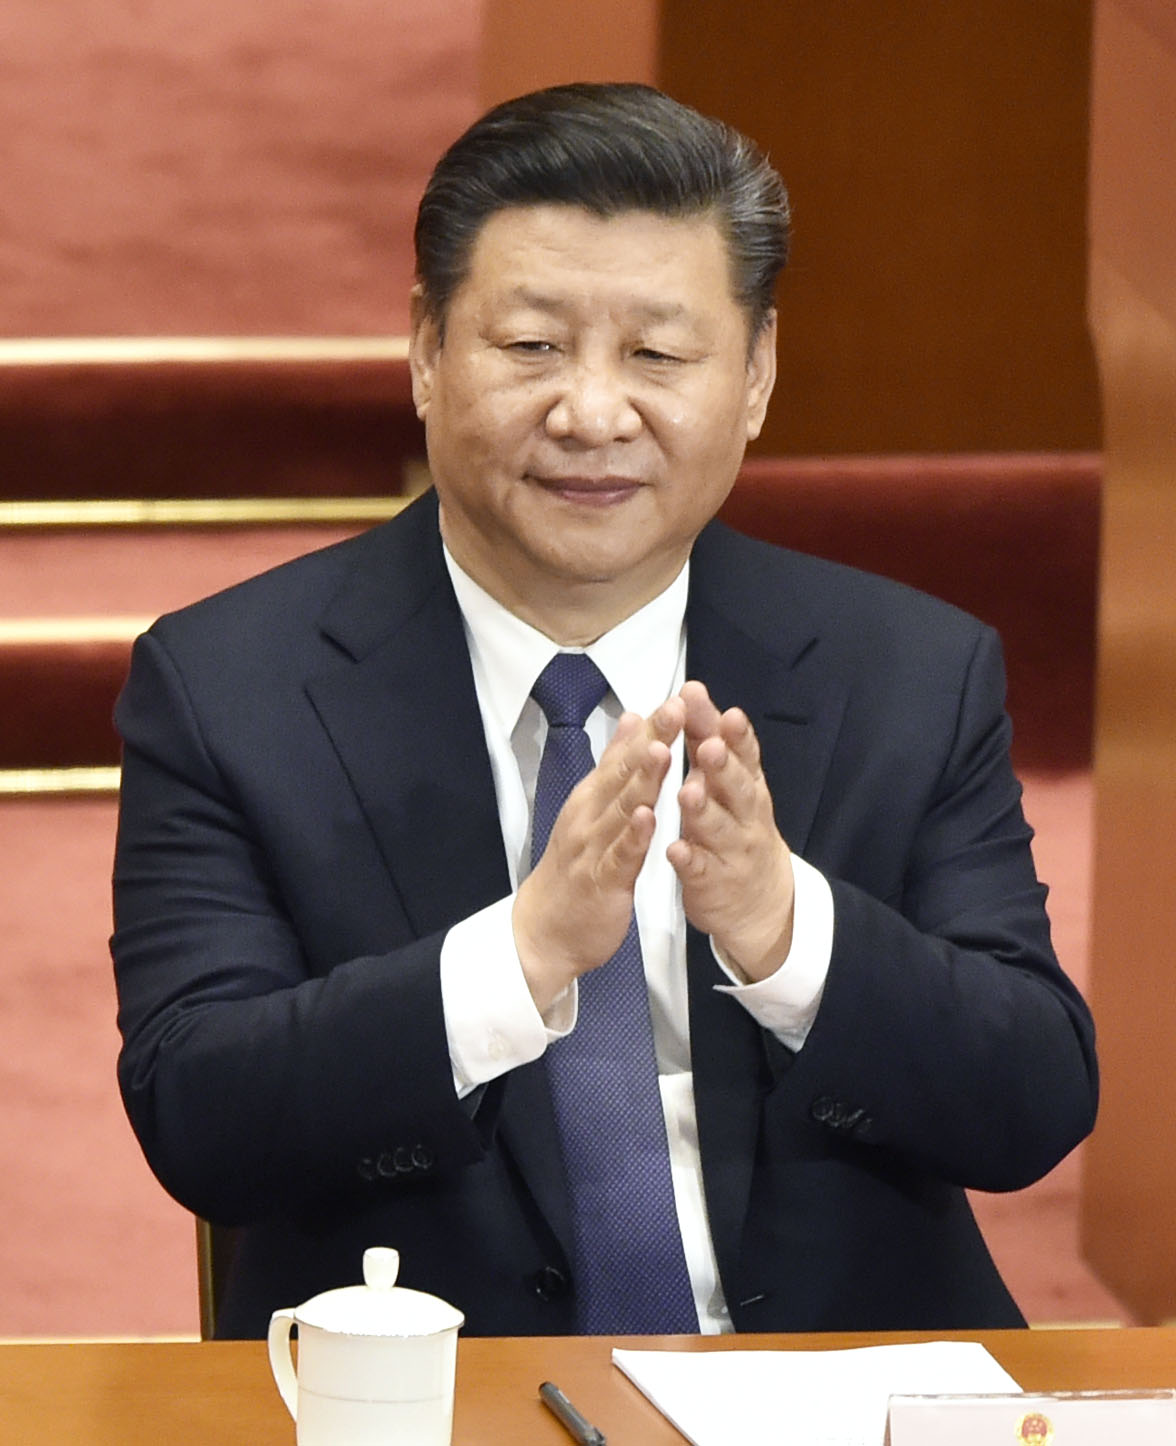 China’s Xi Jinping